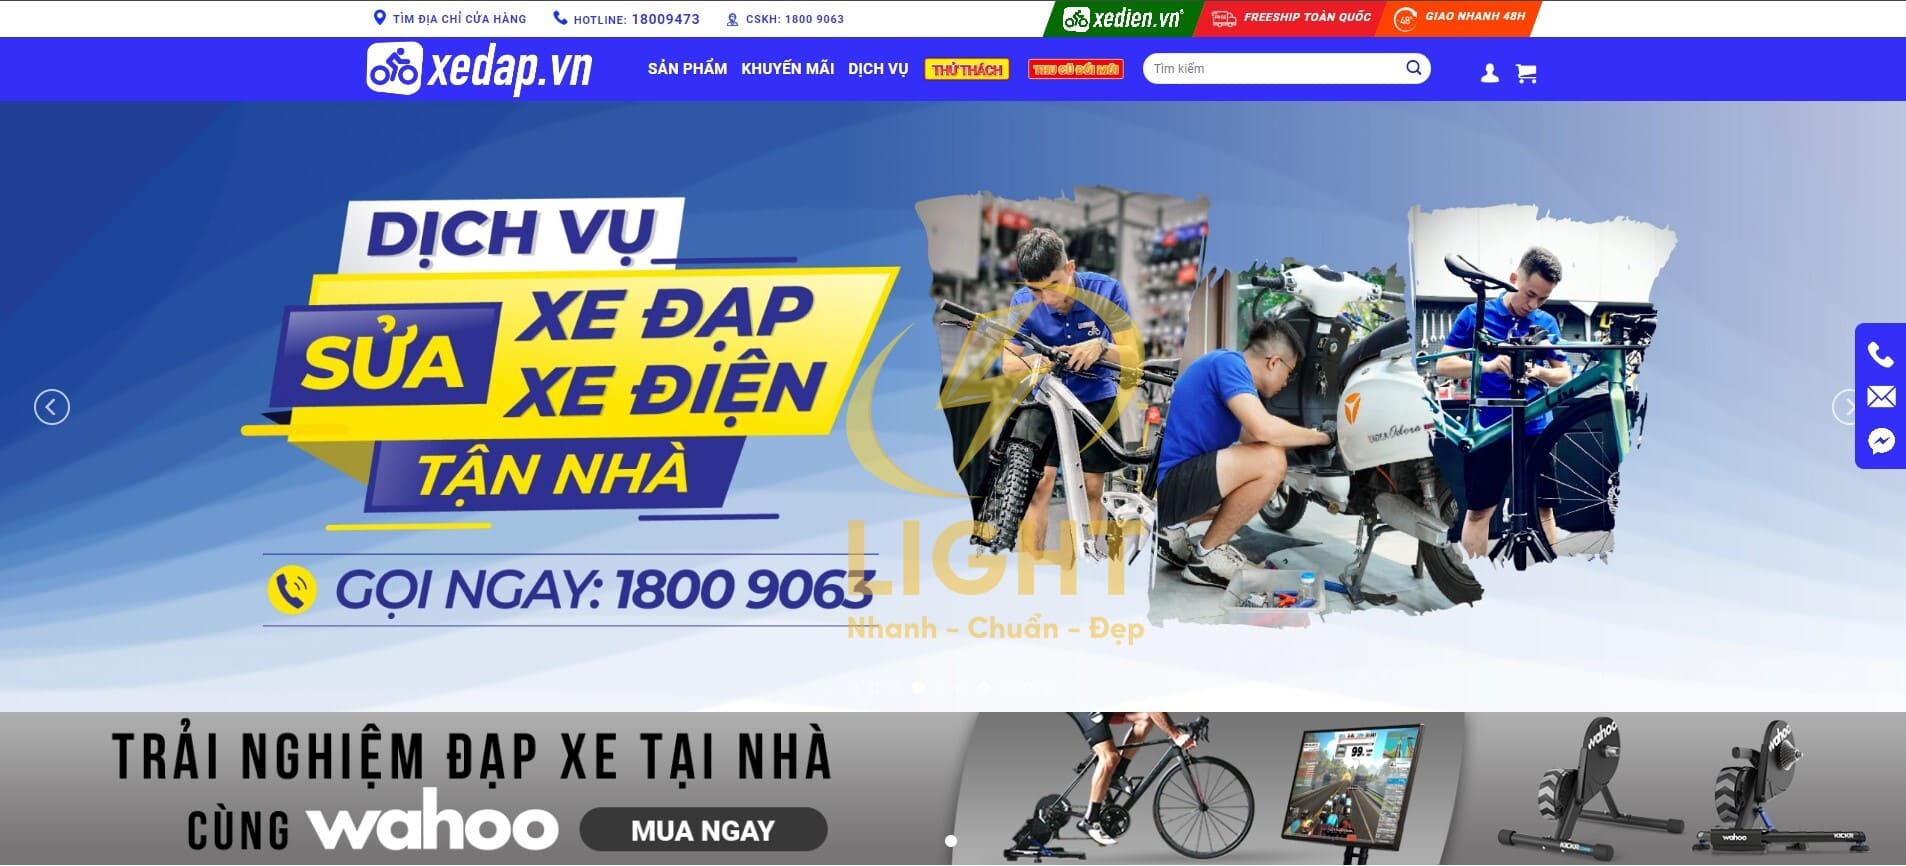 Giao diện website bán xe đạp của Xedap.vn